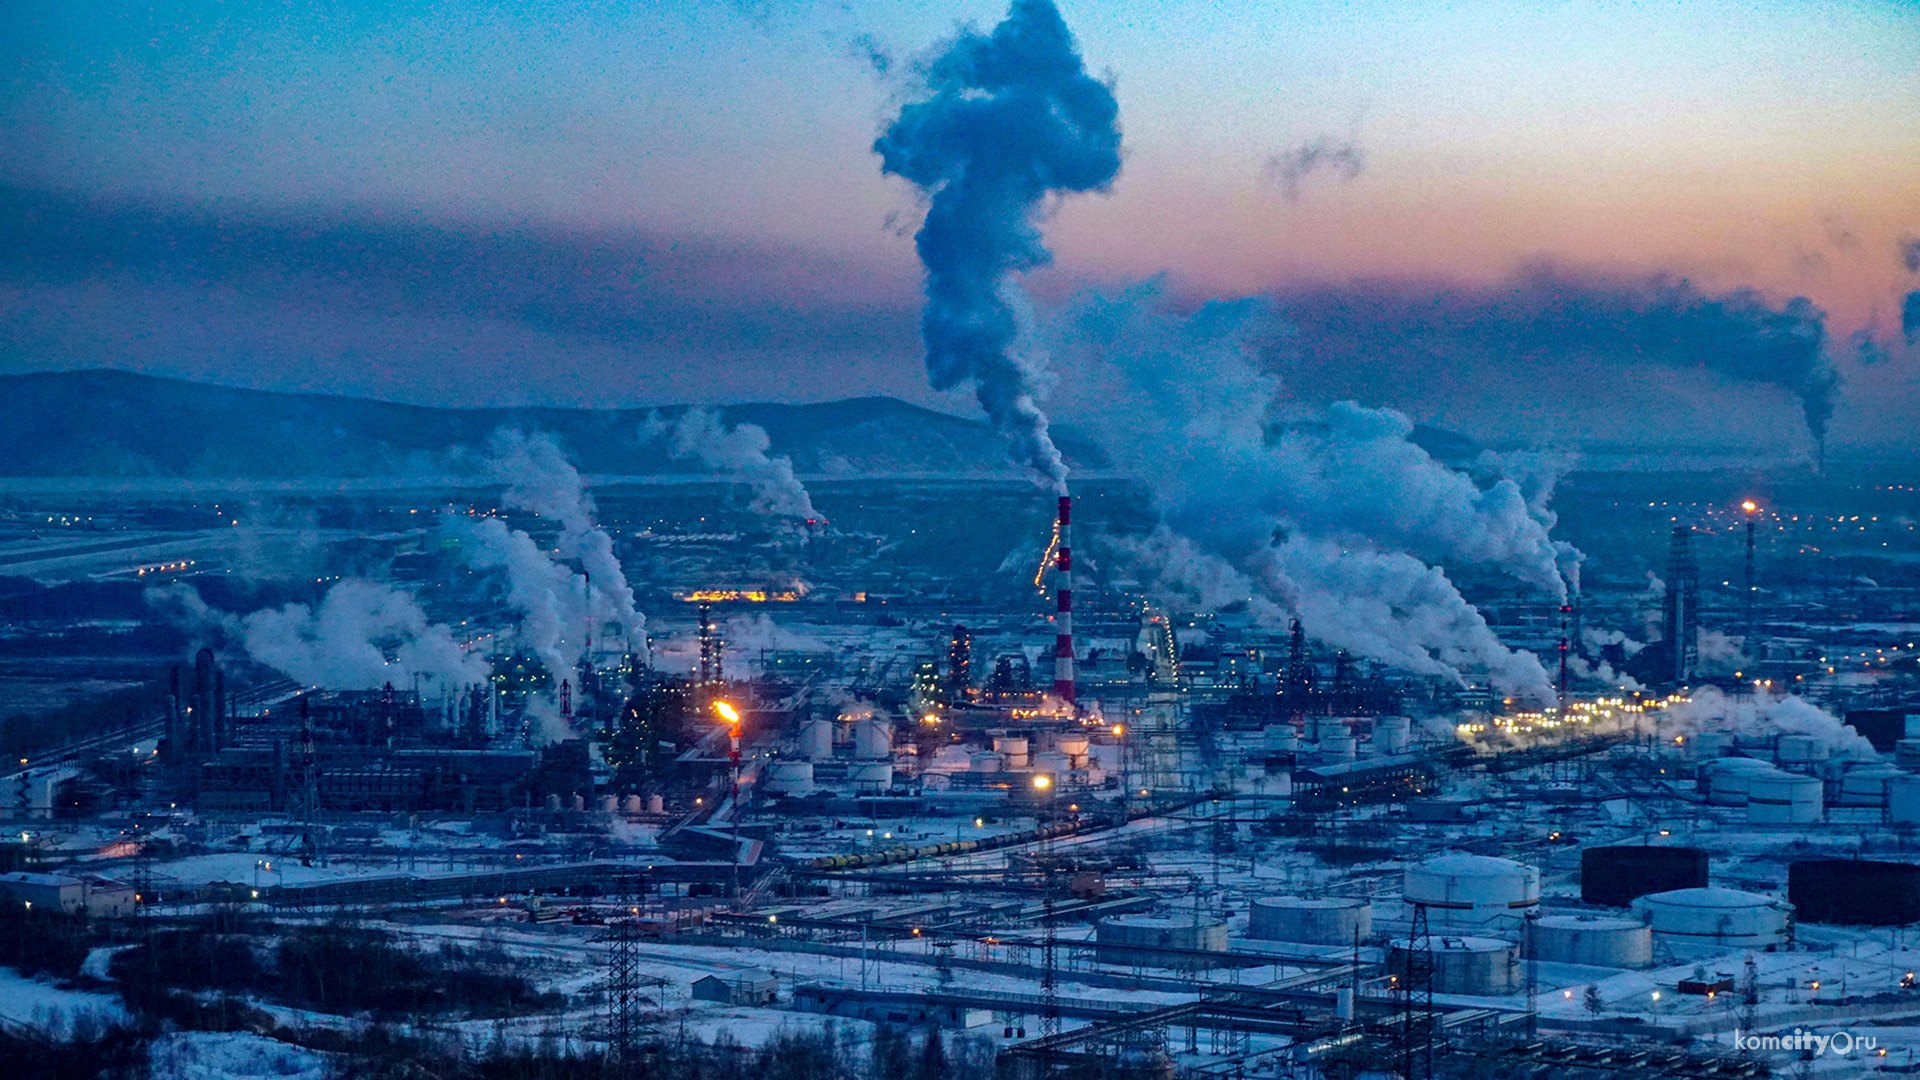 Комсомольск-на-Амуре оказался в списке городов с самым грязным воздухом